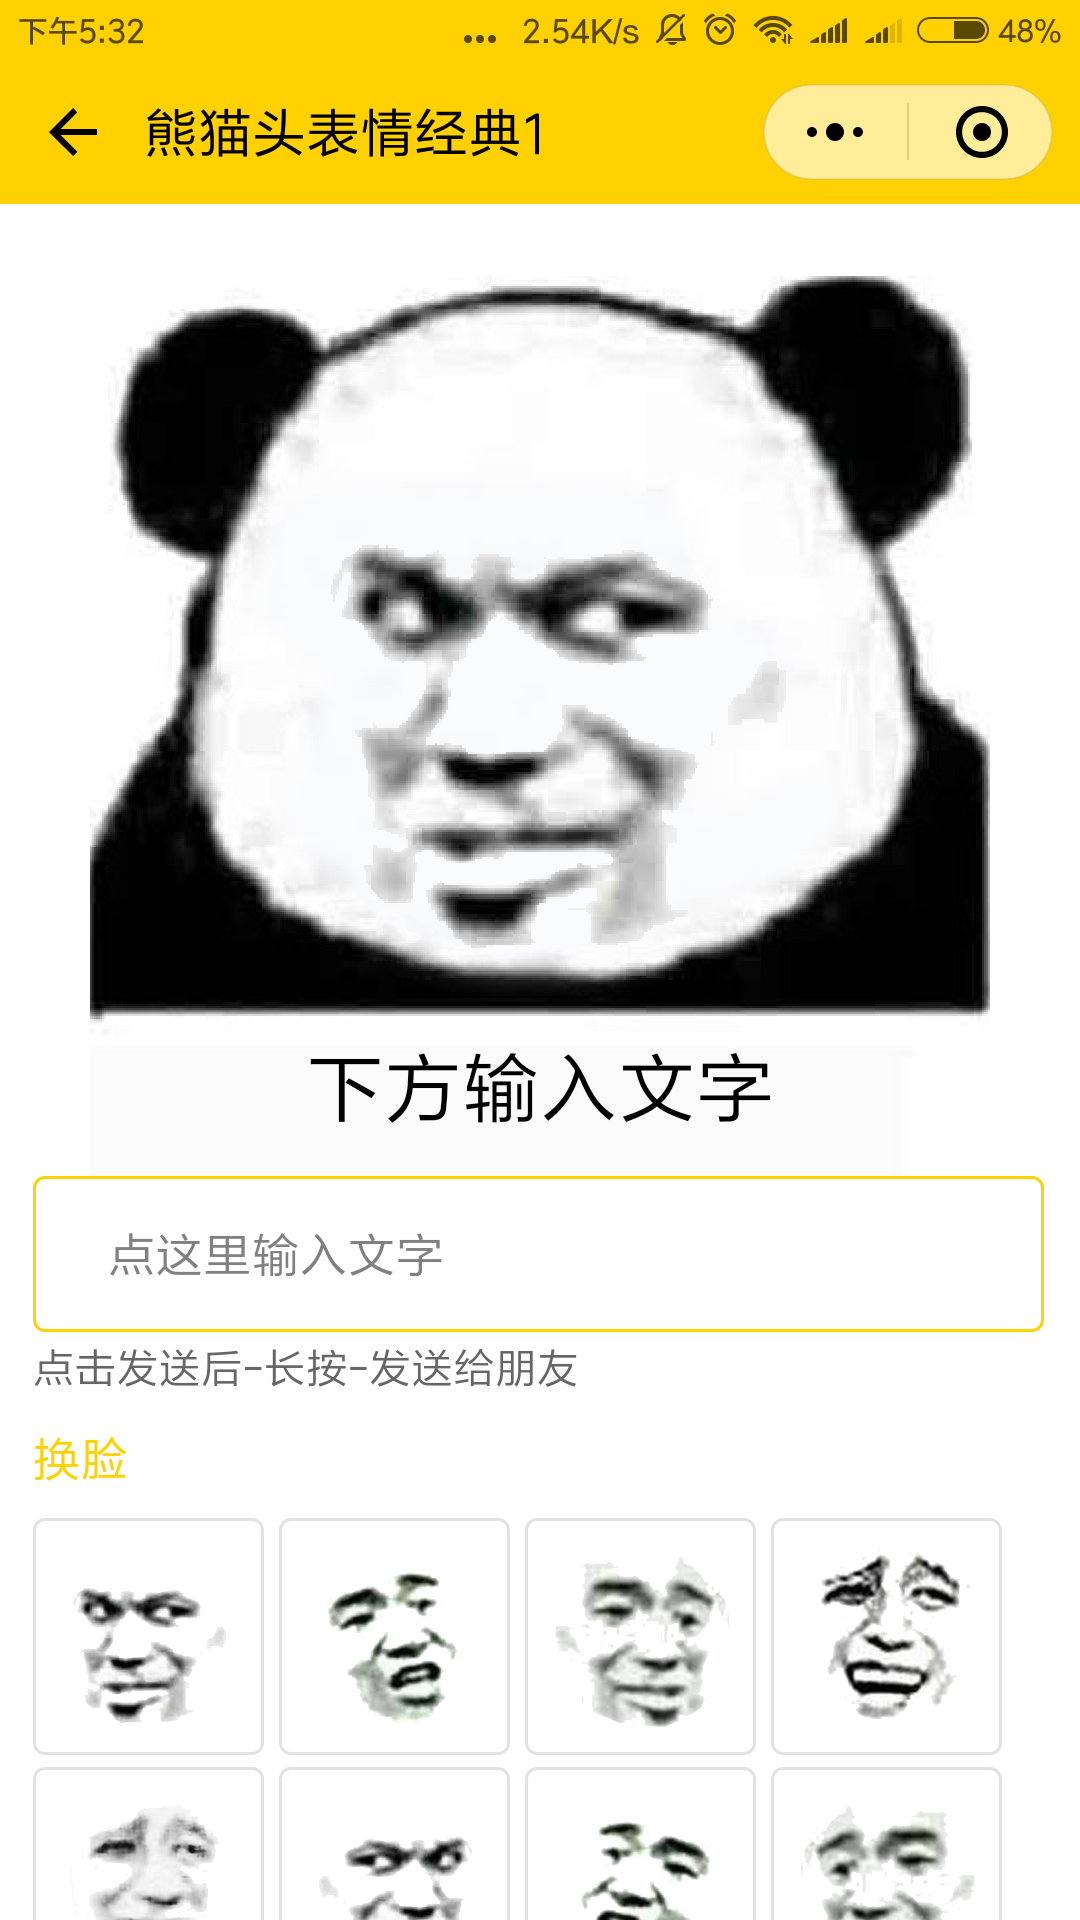 斗图王熊猫头表情包_斗图王熊猫头表情包小程序_斗图王熊猫头表情包微信小程序